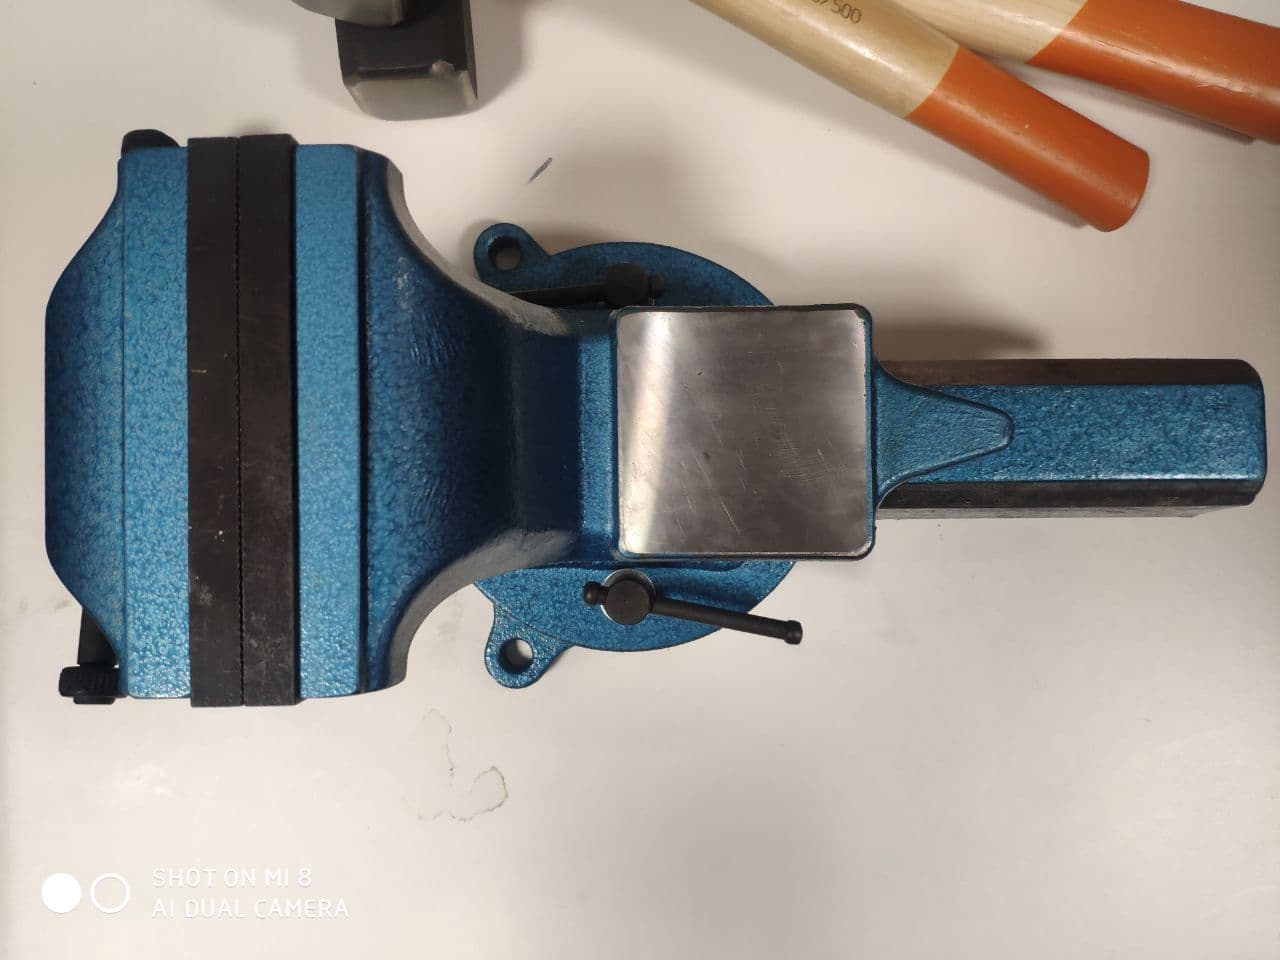 картинка Тиски стальные поворотные, 125 мм с губками для закрепления труб, с наковальней NORGAU 073006-125 от магазина "Элит-инструмент"